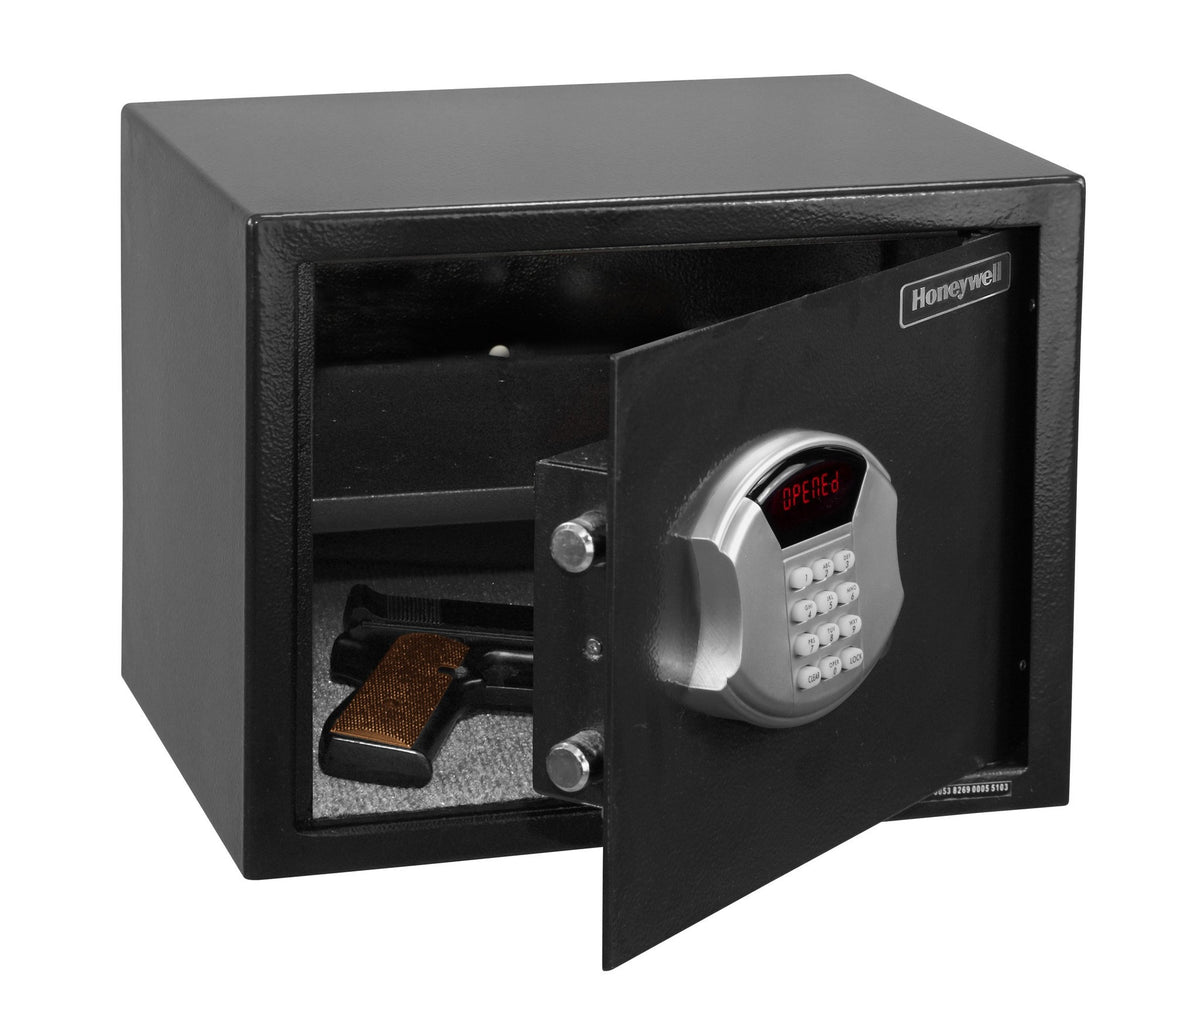 Honeywell 5103 Medium Steel Security Safe Door Open with Handgun